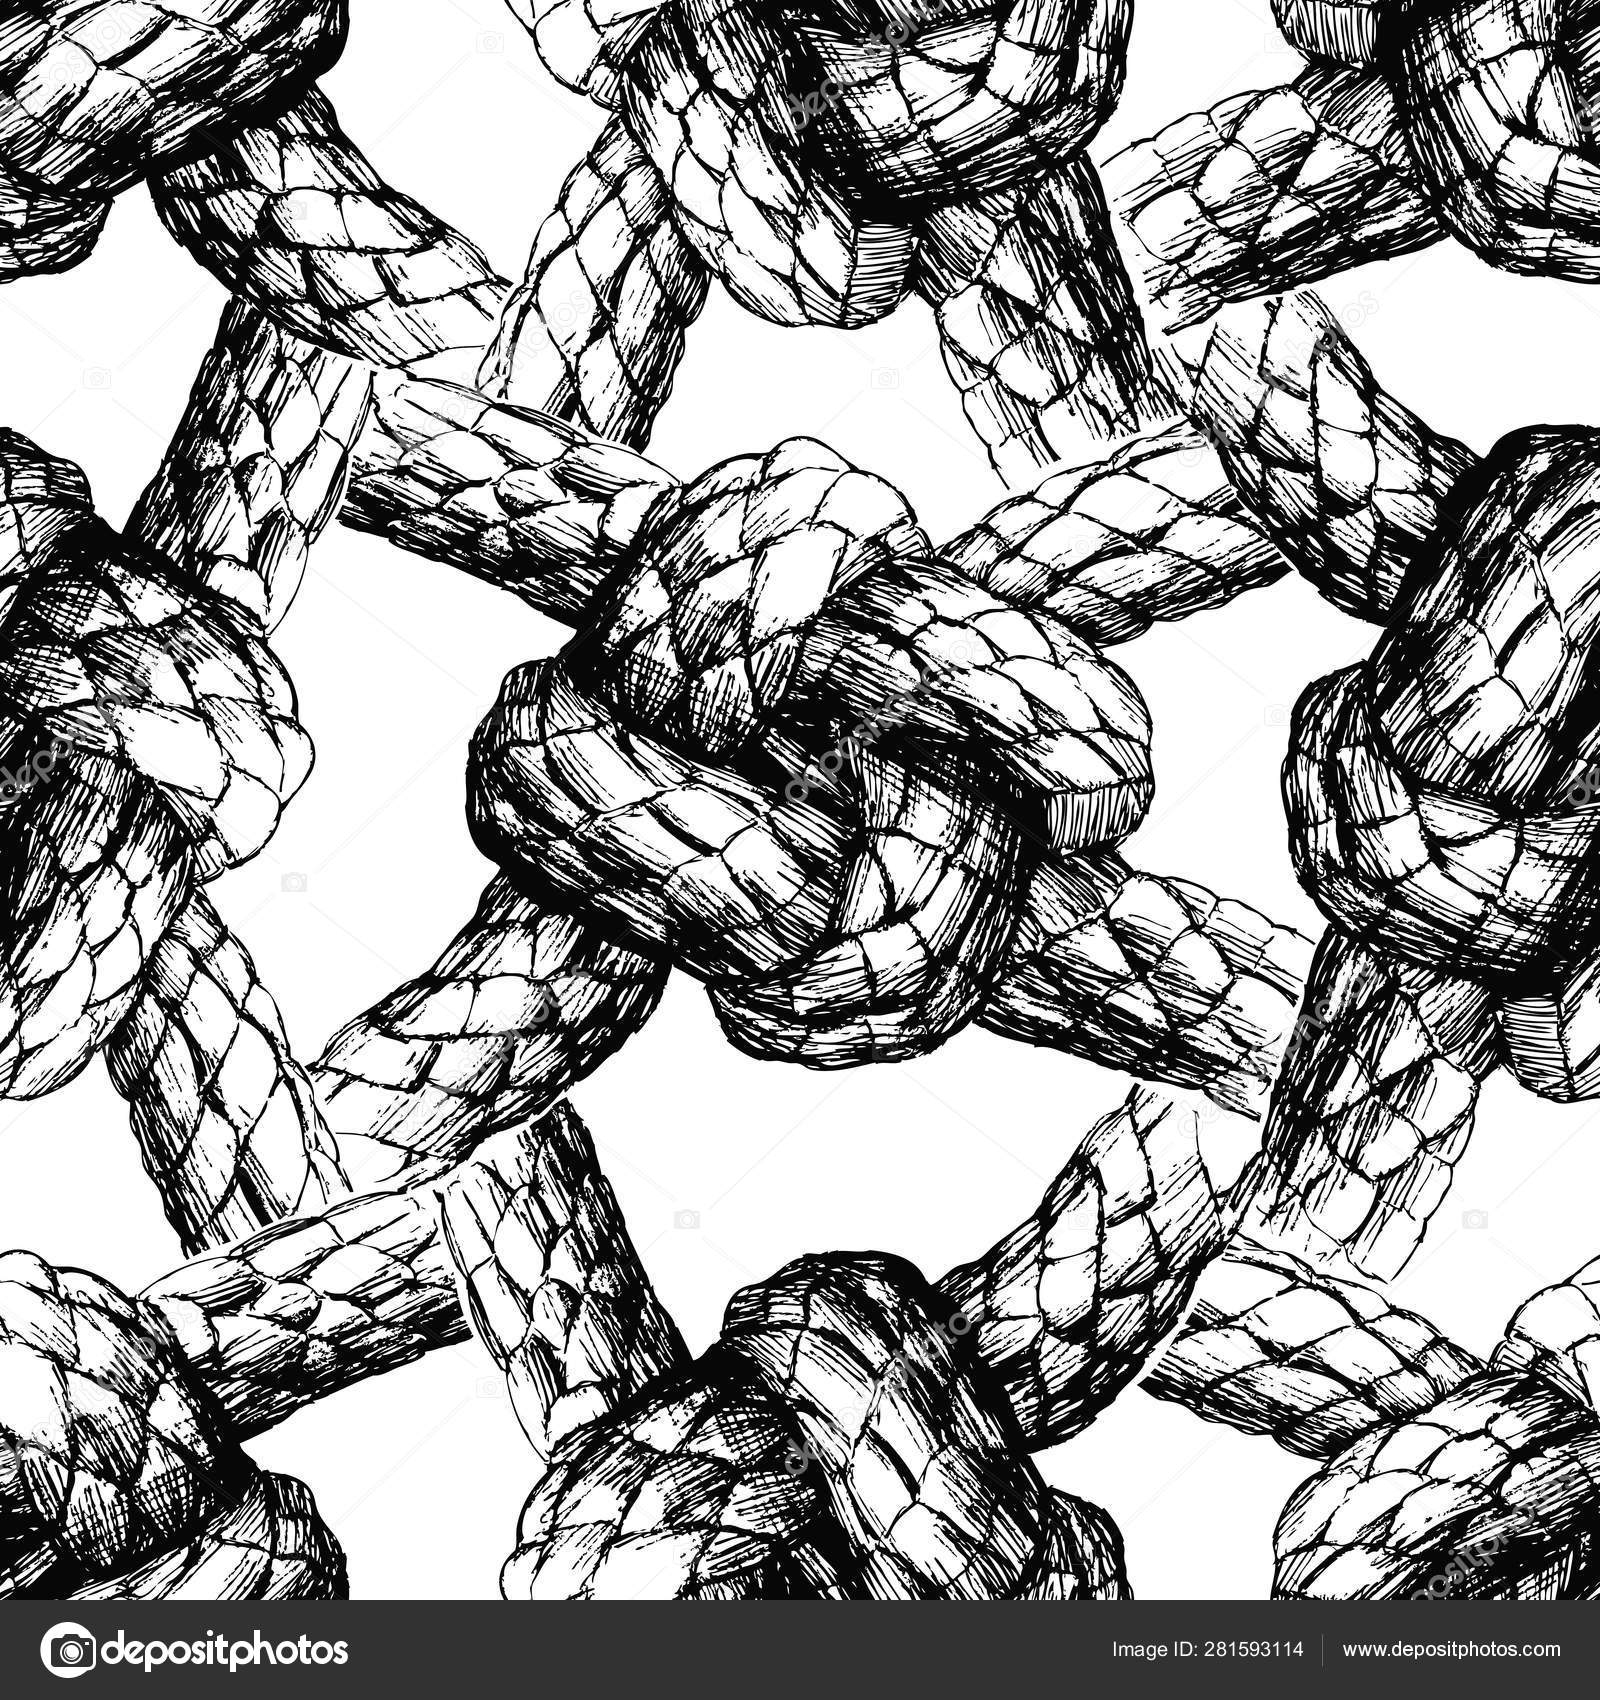 https://st4.depositphotos.com/3258967/28159/v/1600/depositphotos_281593114-stock-illustration-seamless-pattern-sea-knots-rigging.jpg